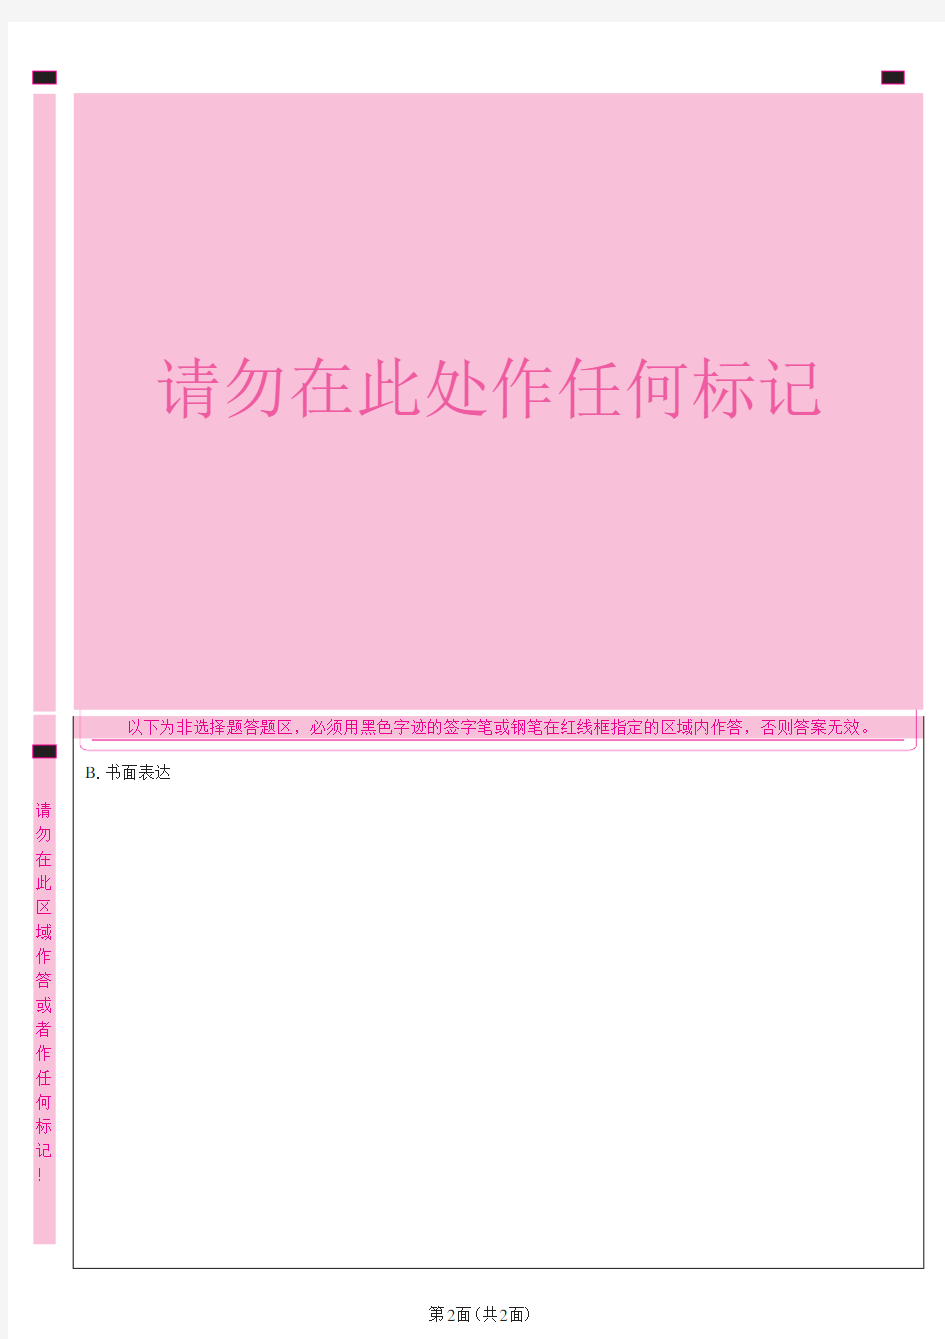 2020年广东省初中学业水平考试——英语答题卡模板